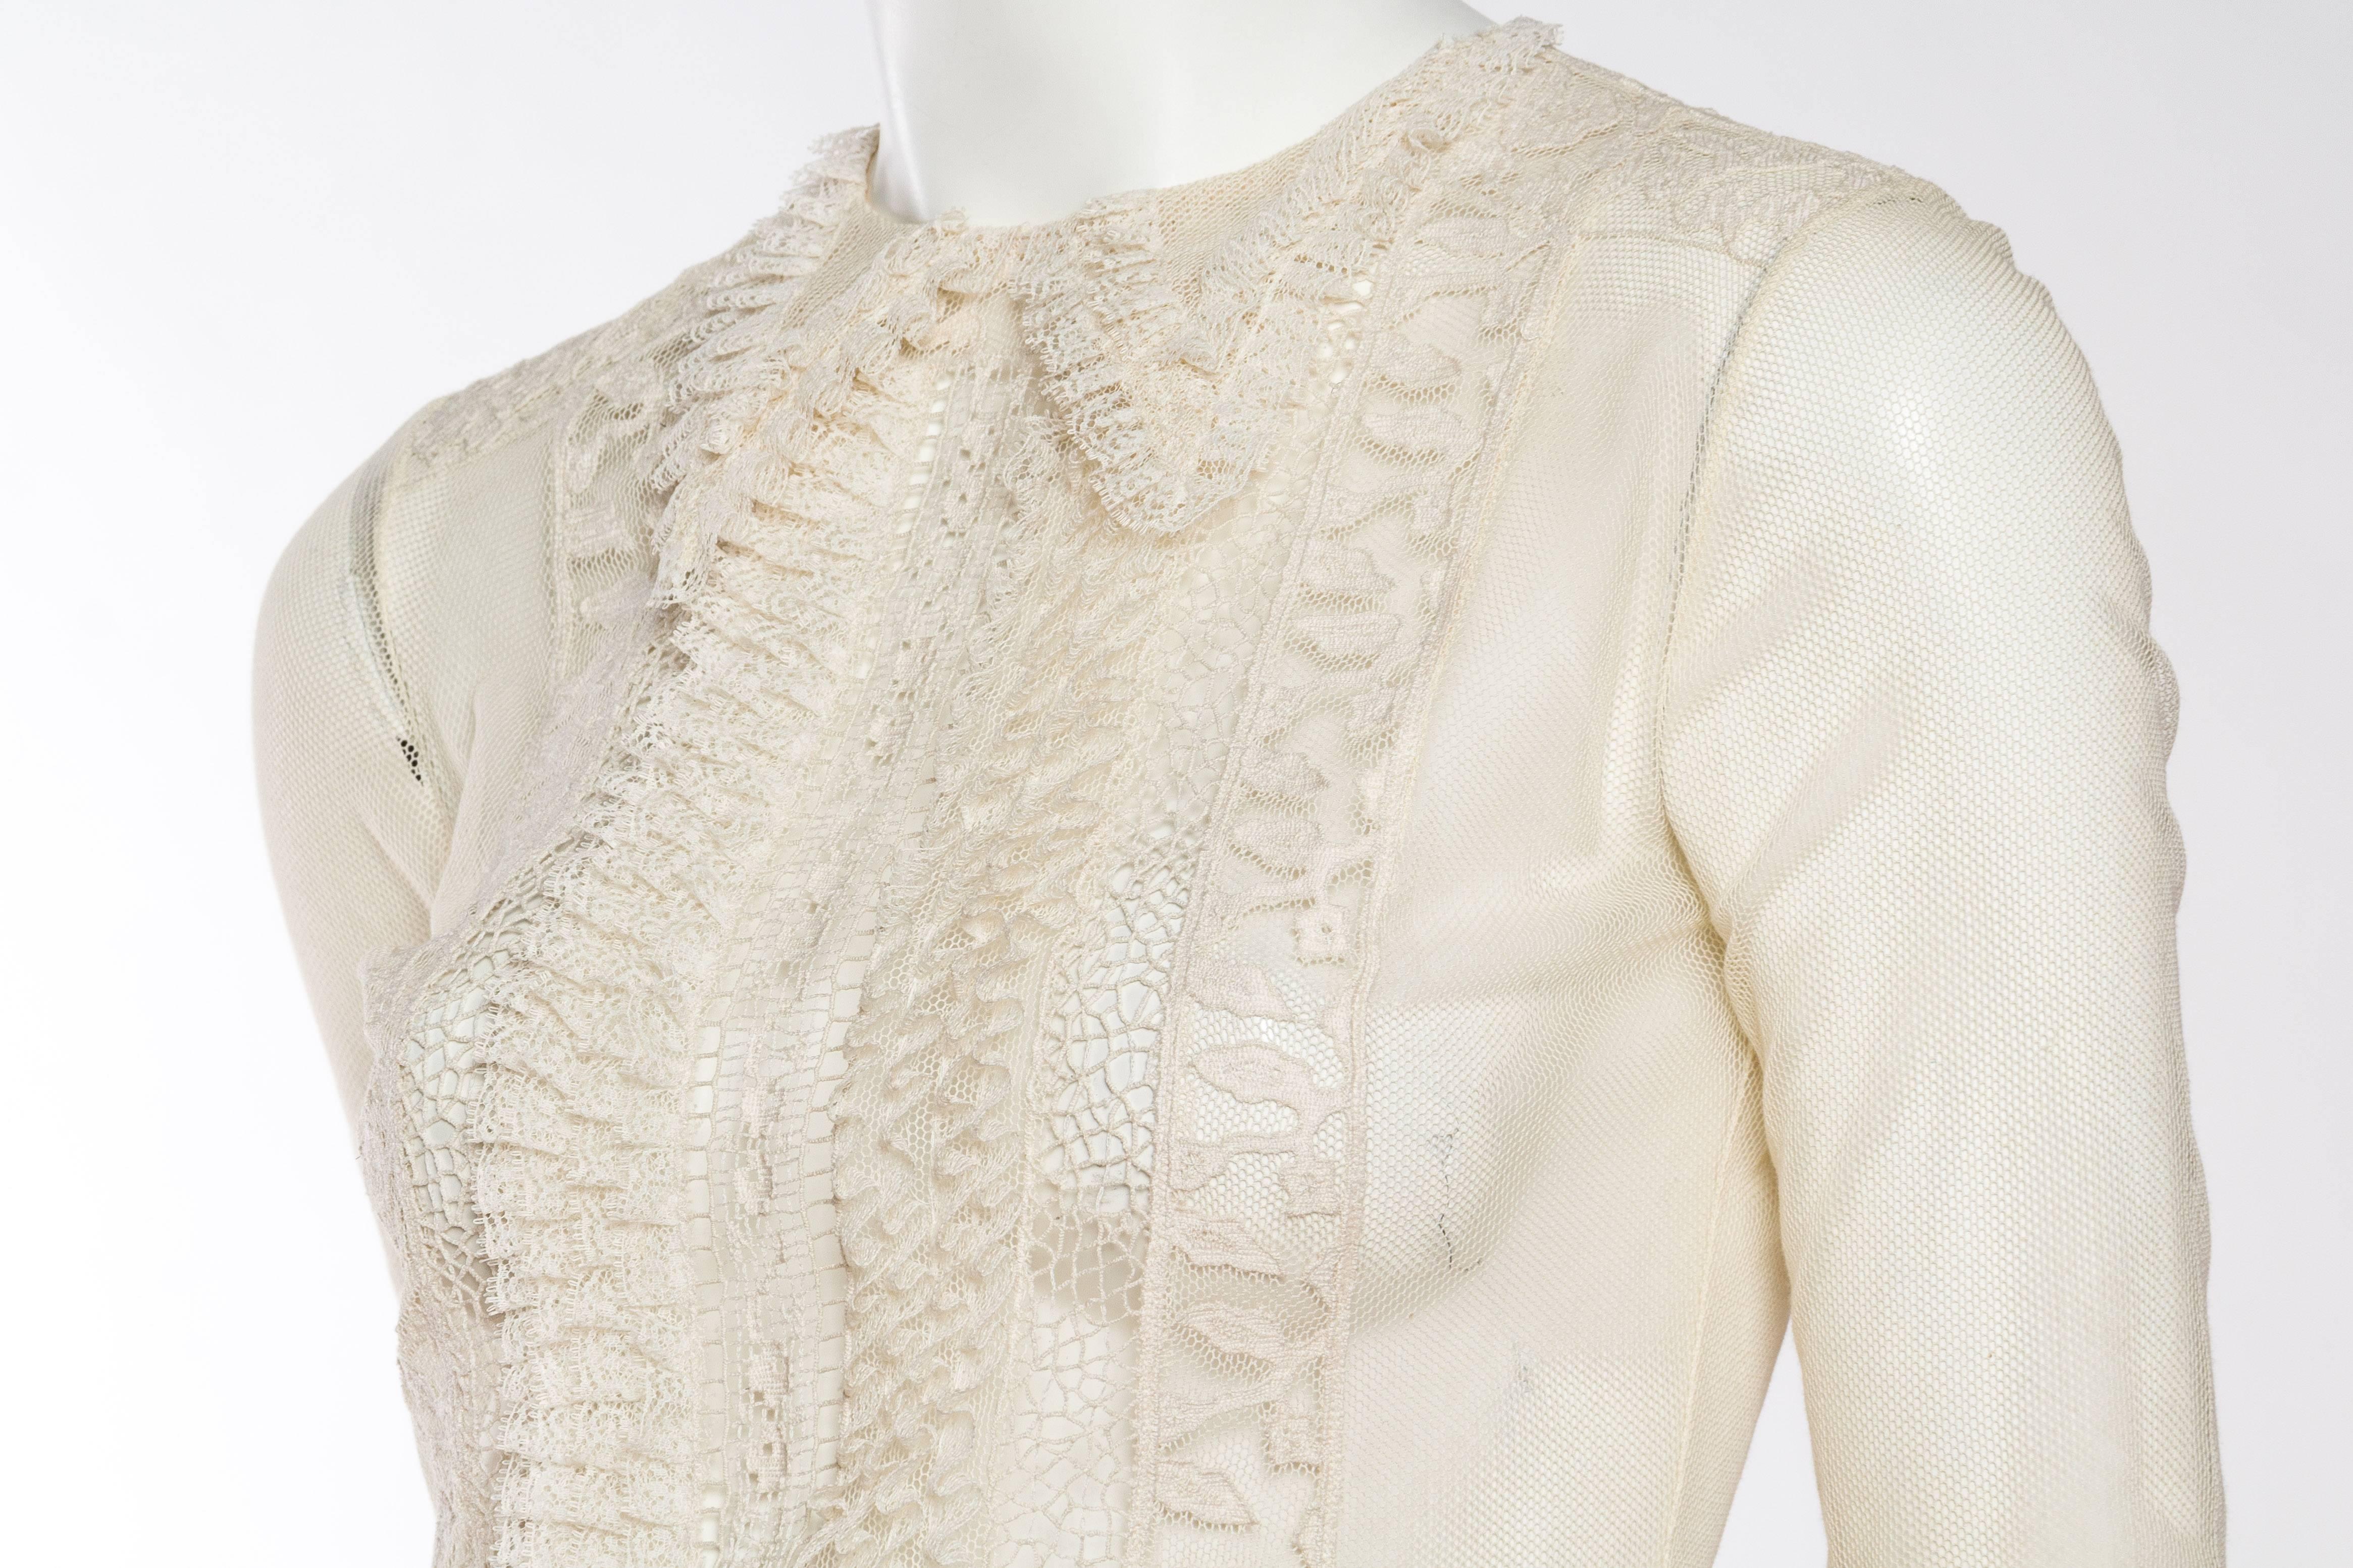 Victorian Style Lace & Net Blouse by Oscar De La Renta 1